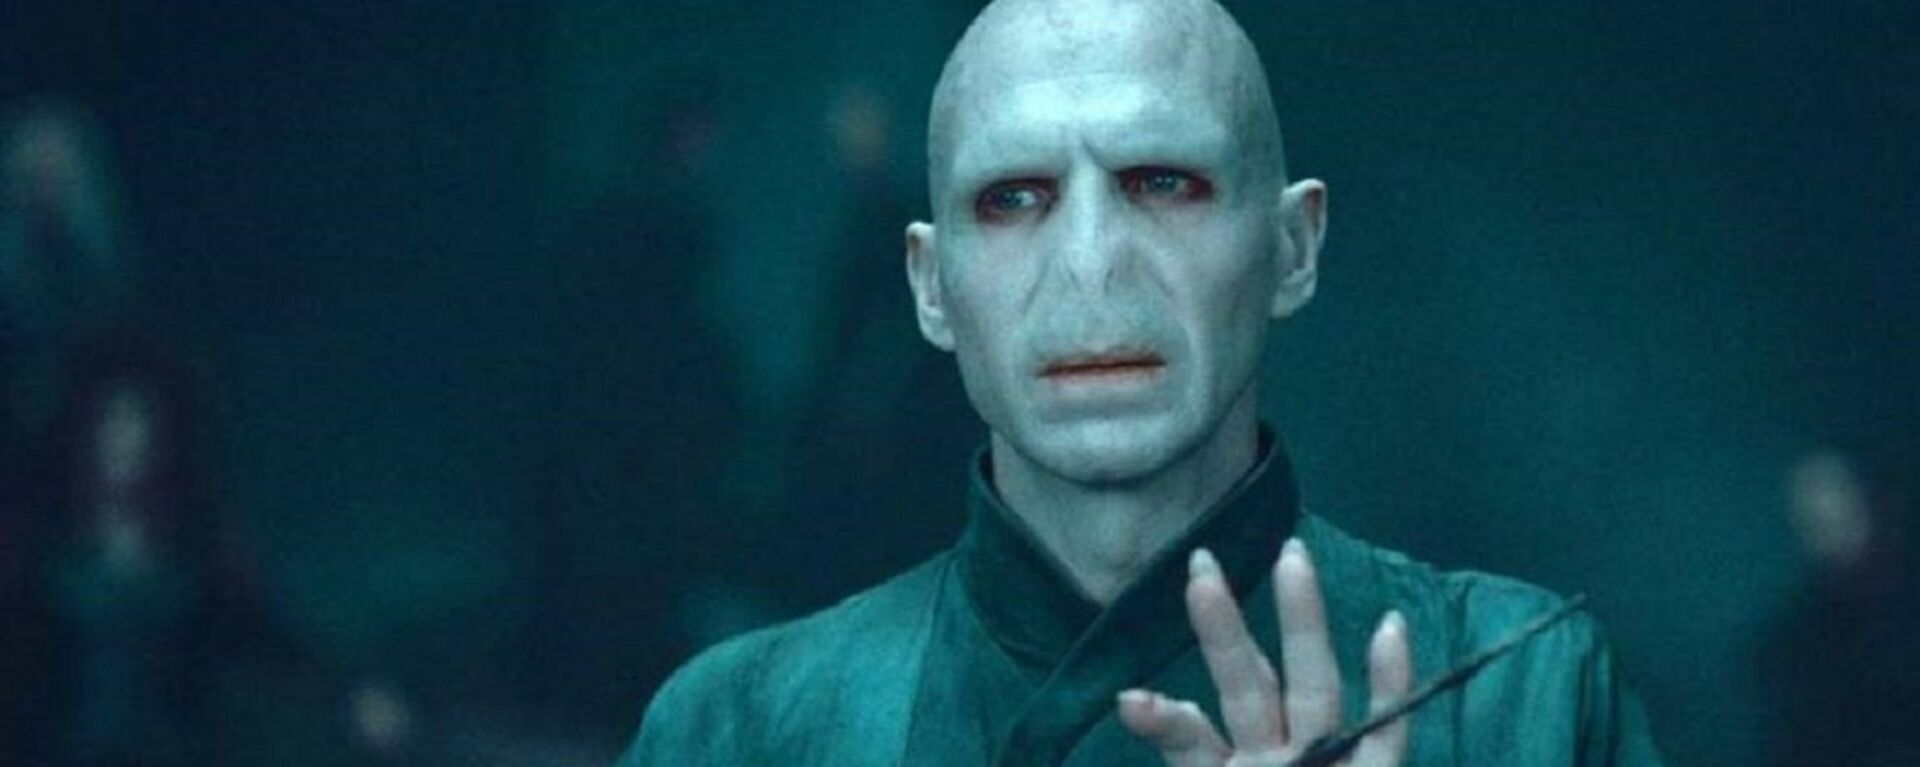 Harry Potter film serisinde yer alan Lord Voldemort karakteri - Sputnik Türkiye, 1920, 16.09.2021